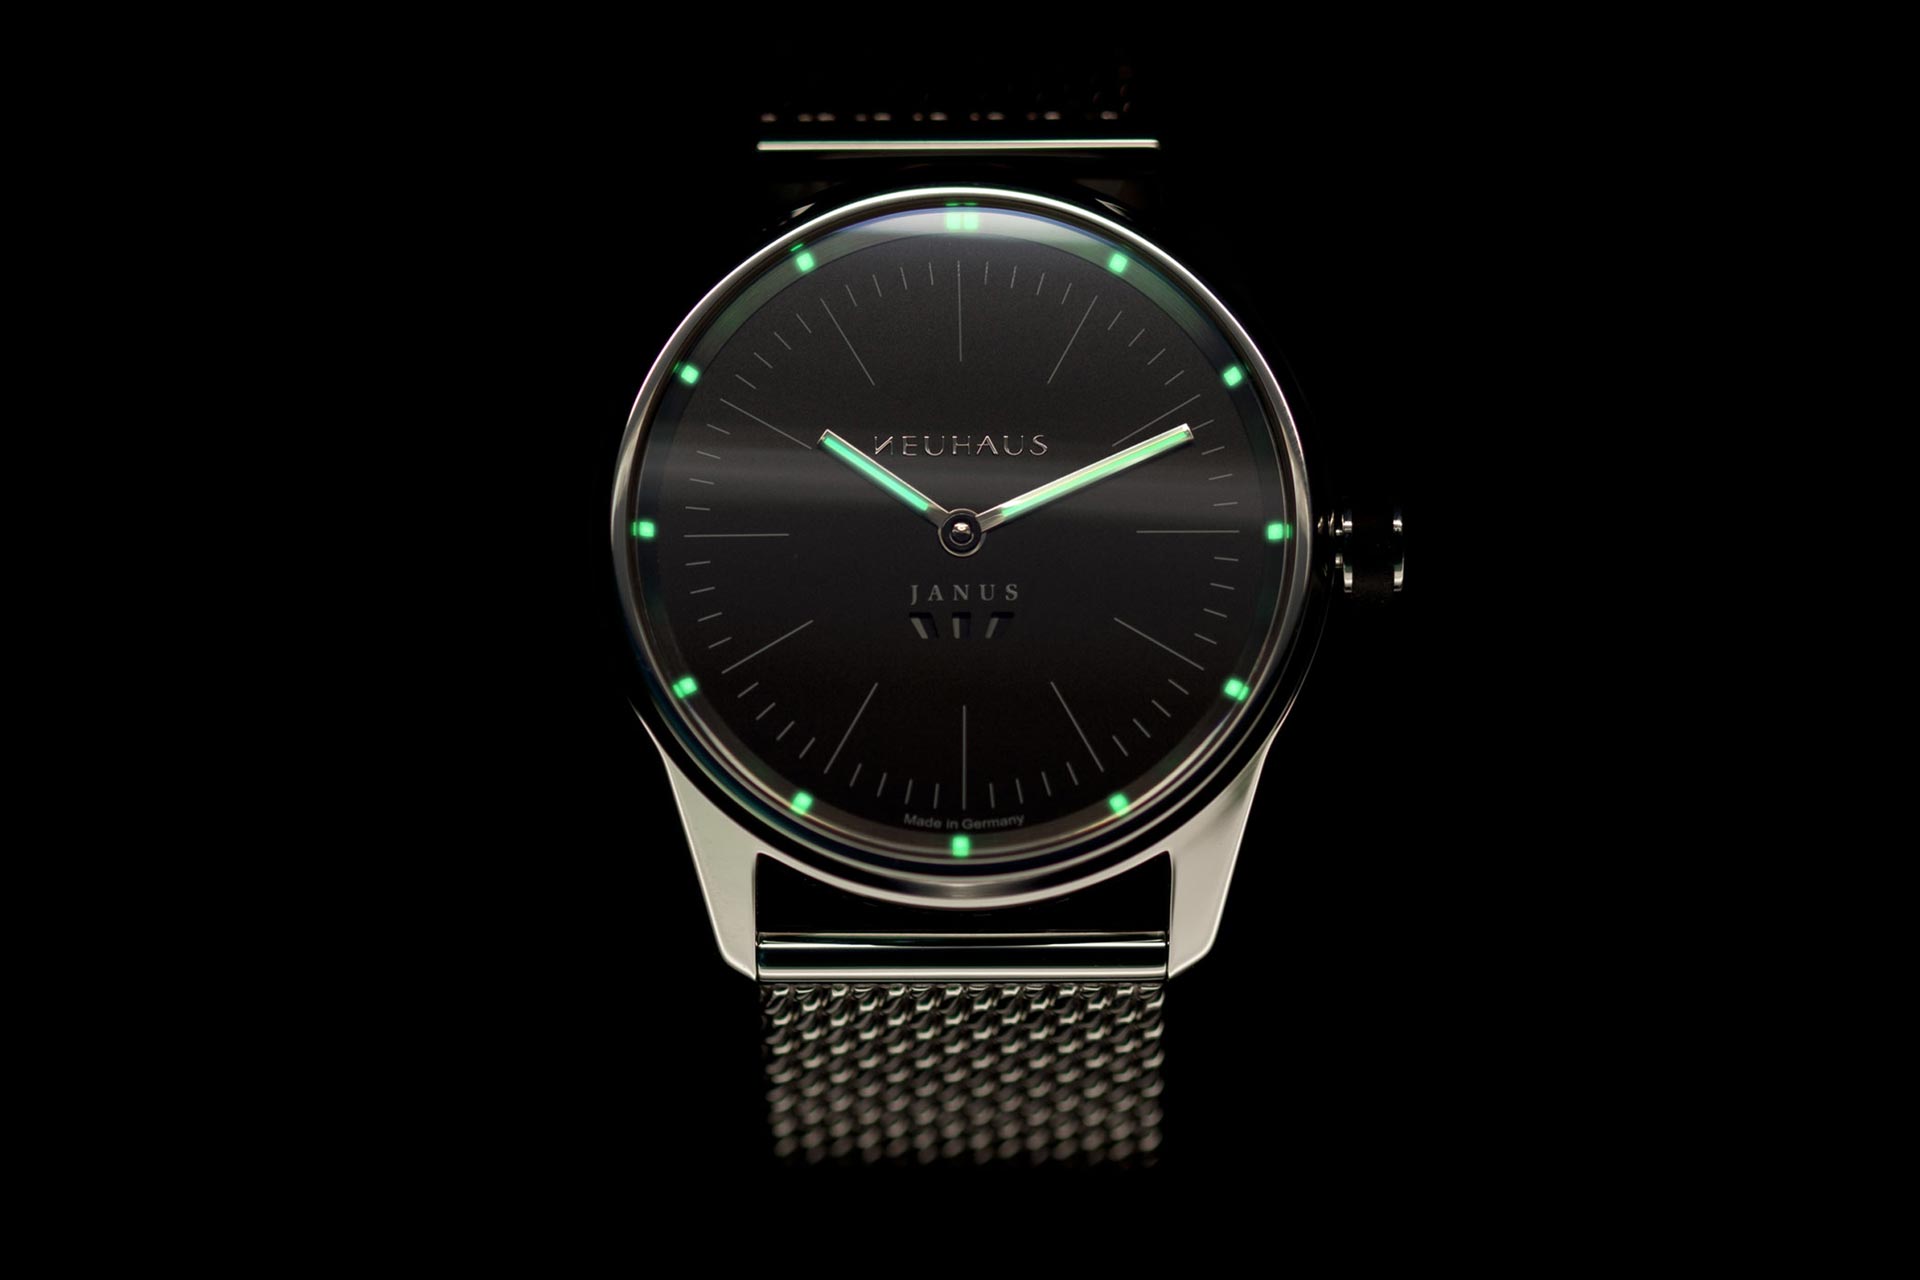 Zweizeigeruhr von NEUHAUS Timepieces, Modell JANUS minimal, mobil leuchtend